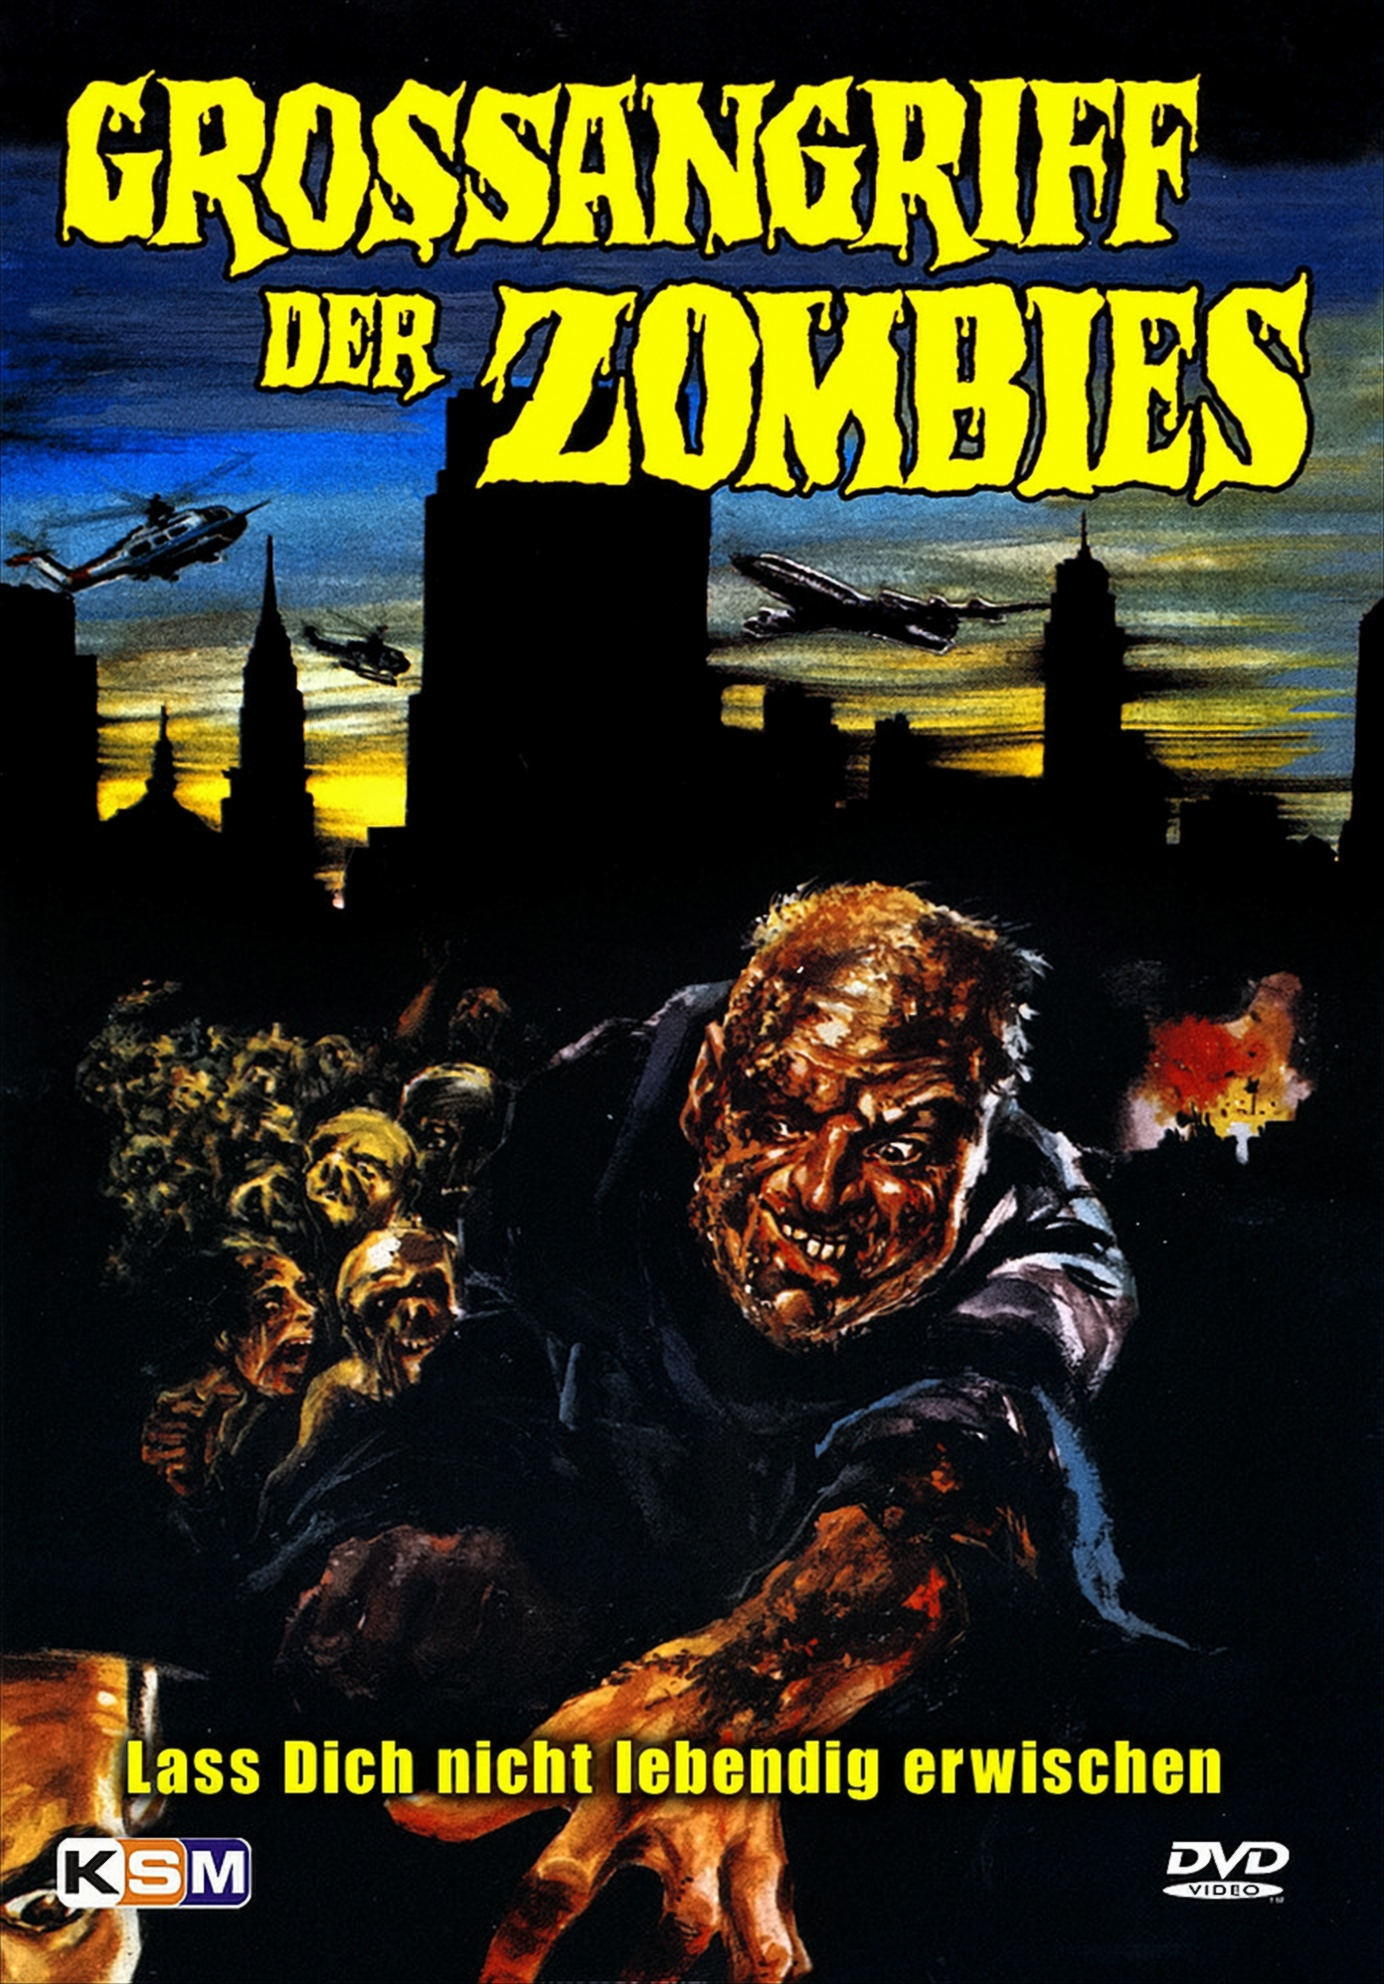 Großangriff DVD Zombies der